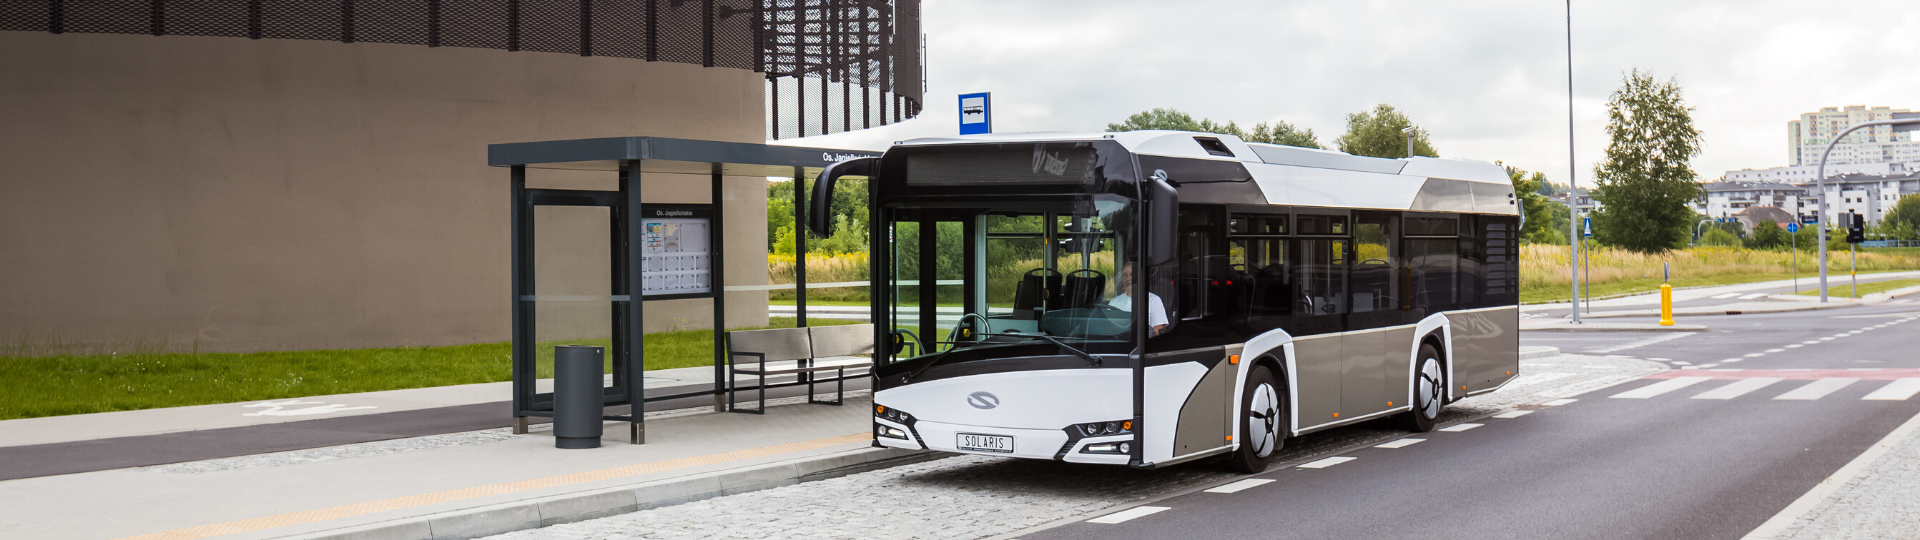 Solaris liefert 20 Busse nach Prag